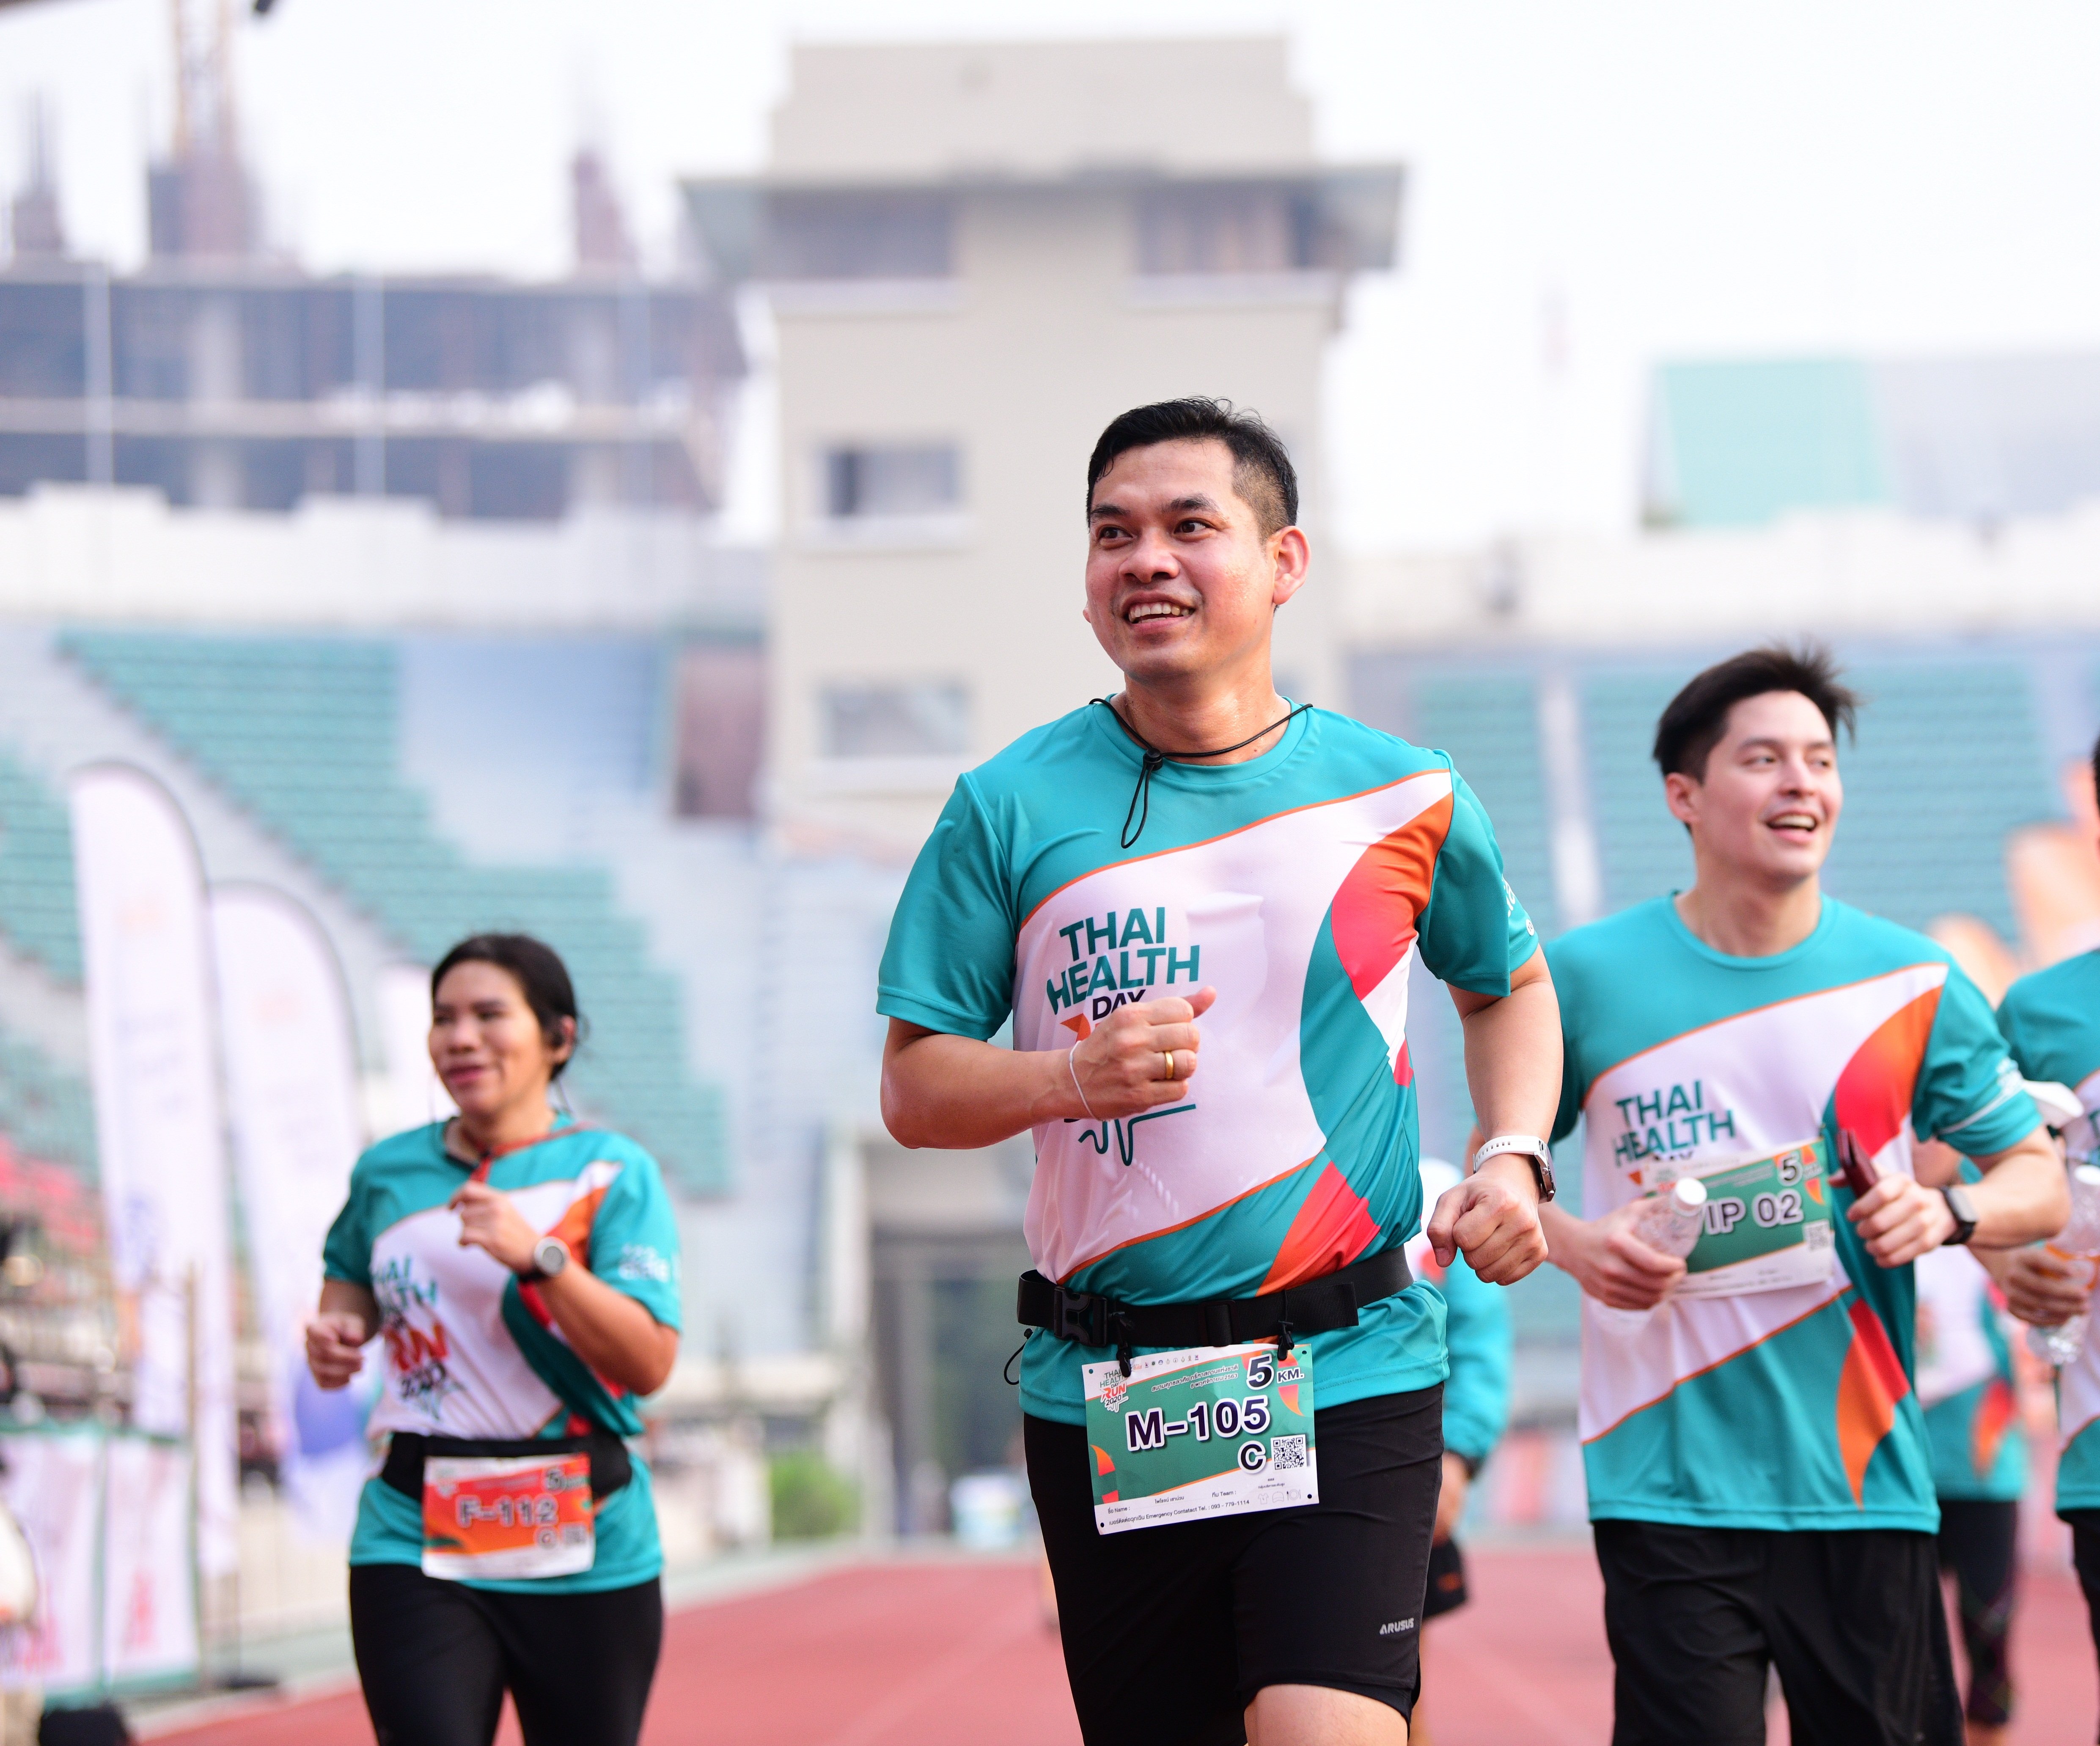 สสส. ย้ำนักวิ่งเตรียมพร้อมก่อนลงสนาม ลดความเสี่ยงสุขภาพ thaihealth